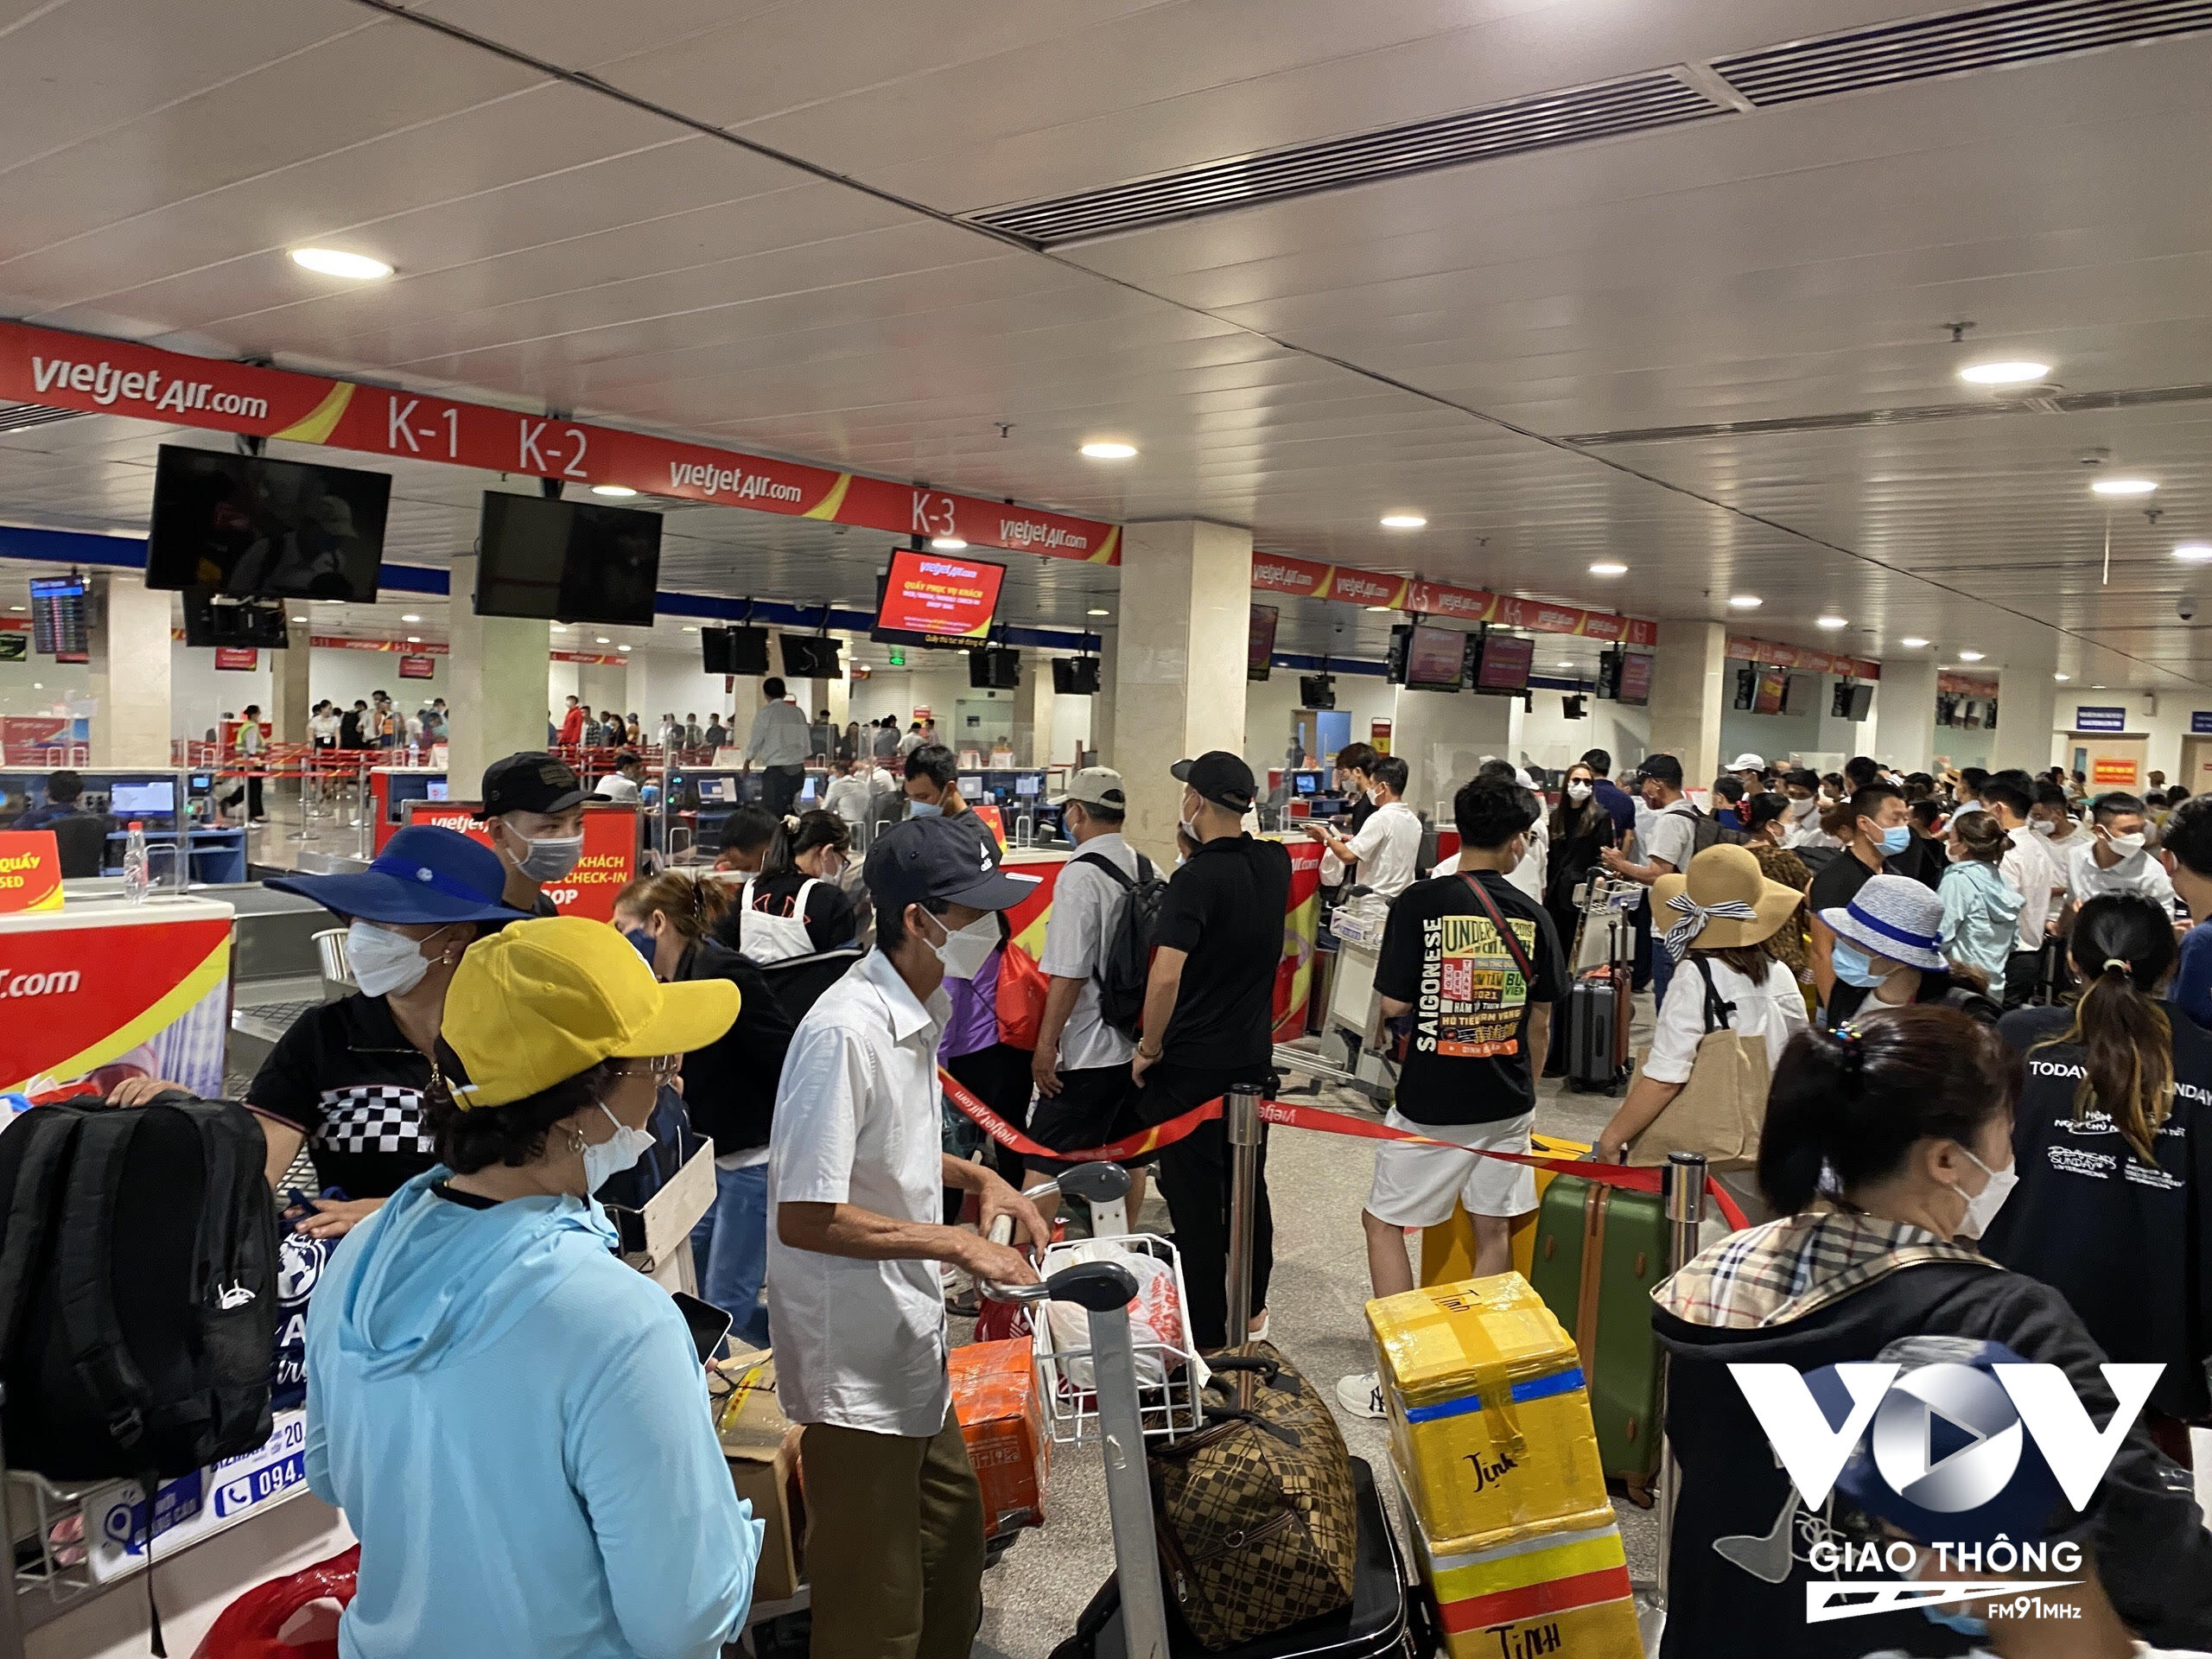 Đến chiều nay (4/6), khu vực check in lấy vé tại hãng Vietjet tại sân bay Tân Sơn Nhất (TP.HCM) vẫn còn rất đông đúc hành khách xếp hàng dài chờ đợi để làm thủ tục. Theo đại diện Cảng vụ Miền Nam, hệ thống check-in của hãng Vietjet vẫn đang tiếp tục bị lỗi khiến nhiều chuyễn bay bị chậm, trễ chuyến.